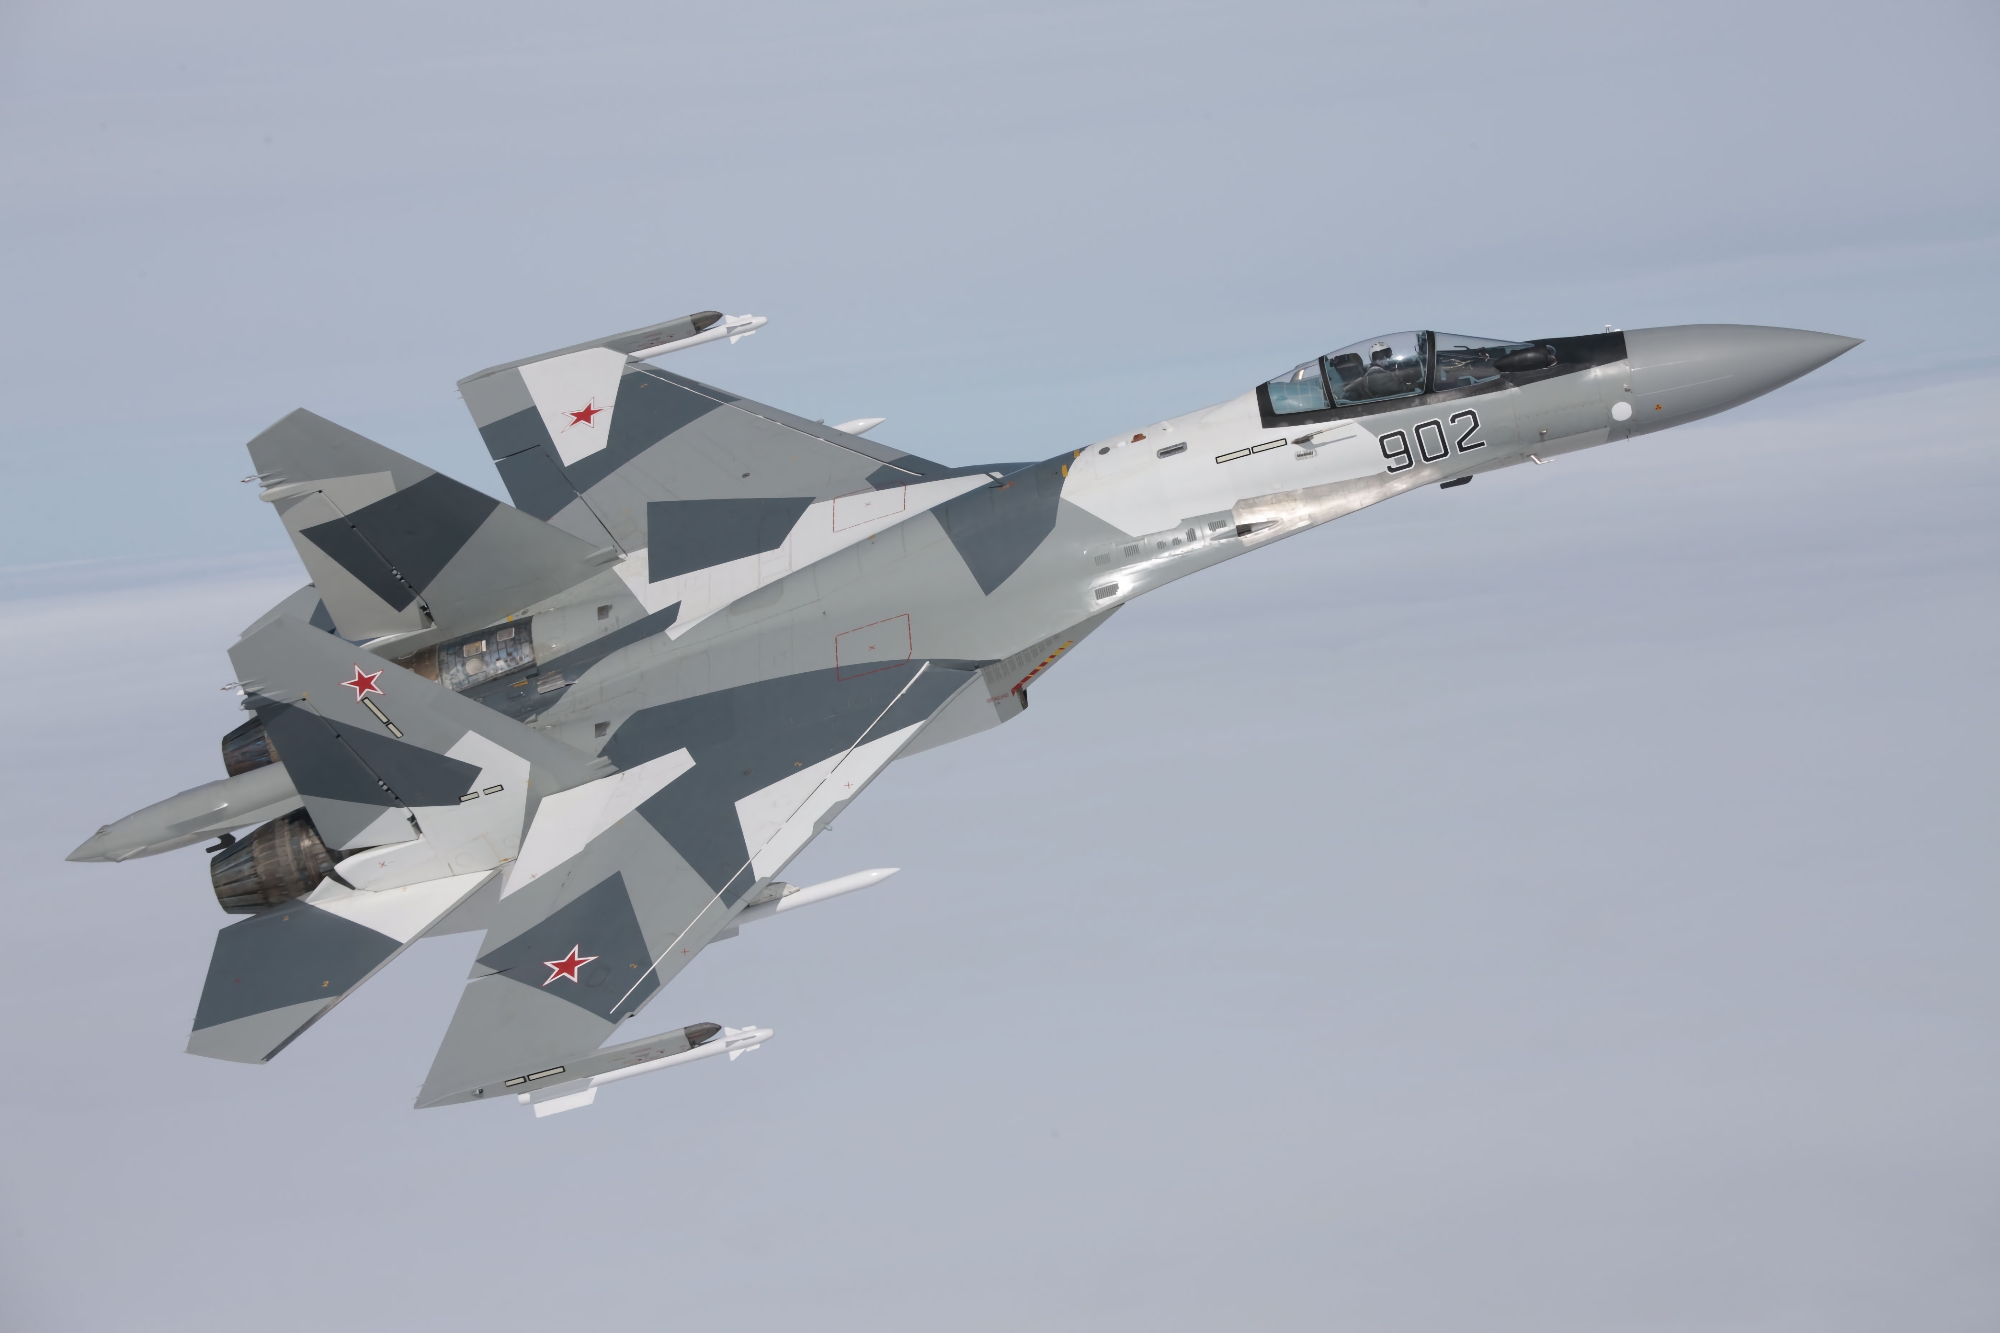 L'Iran vuole acquistare caccia Su-35 dalla Russia, originariamente previsti per essere venduti in Indonesia ed Egitto